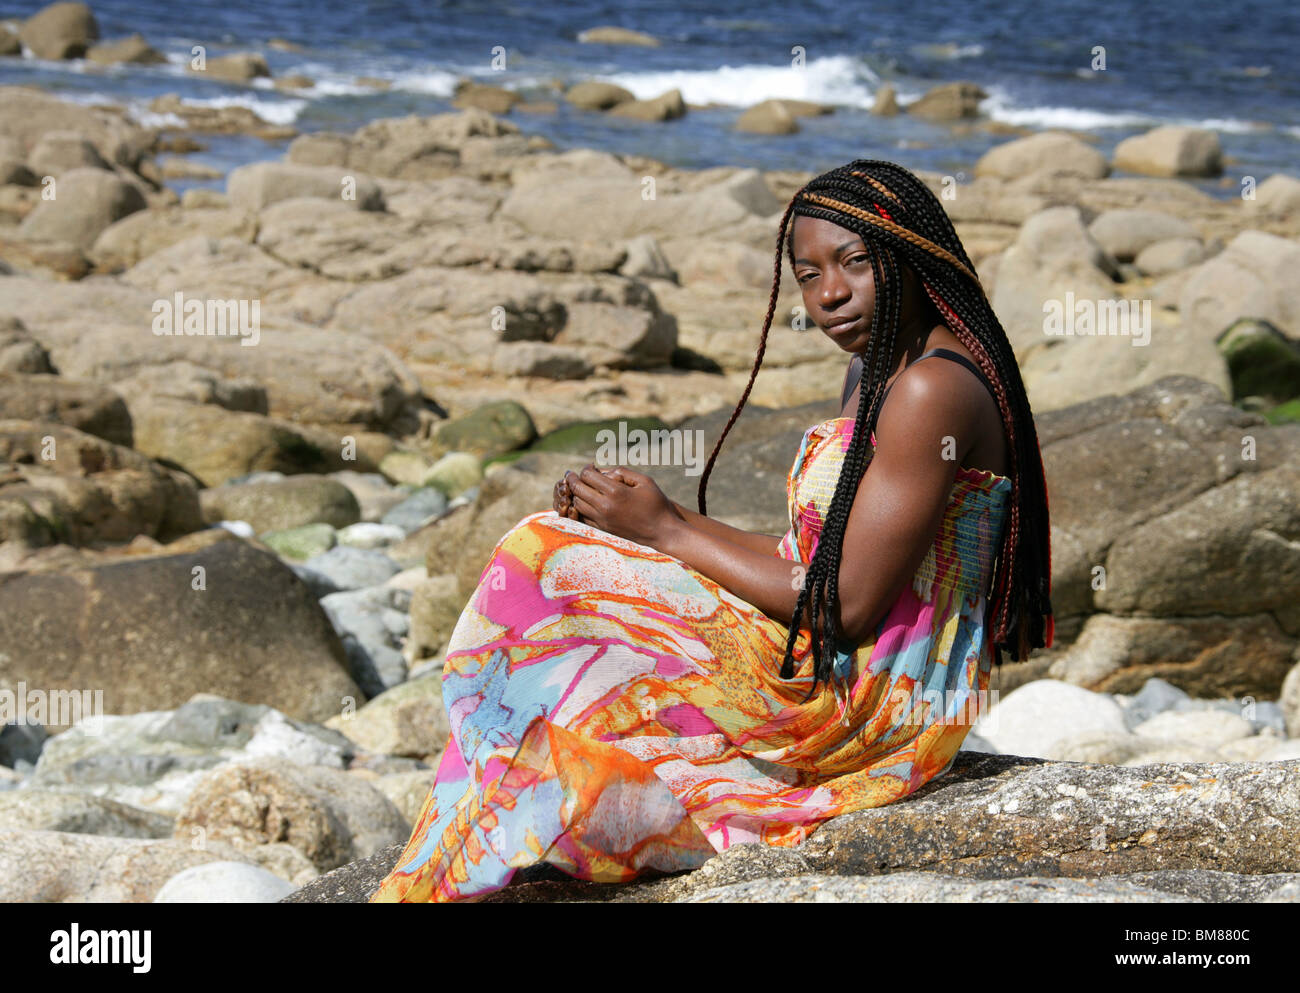 Donna africana con Dreadlocks, e indossando un abito colorato, posa sulle rocce dal mare. Foto Stock